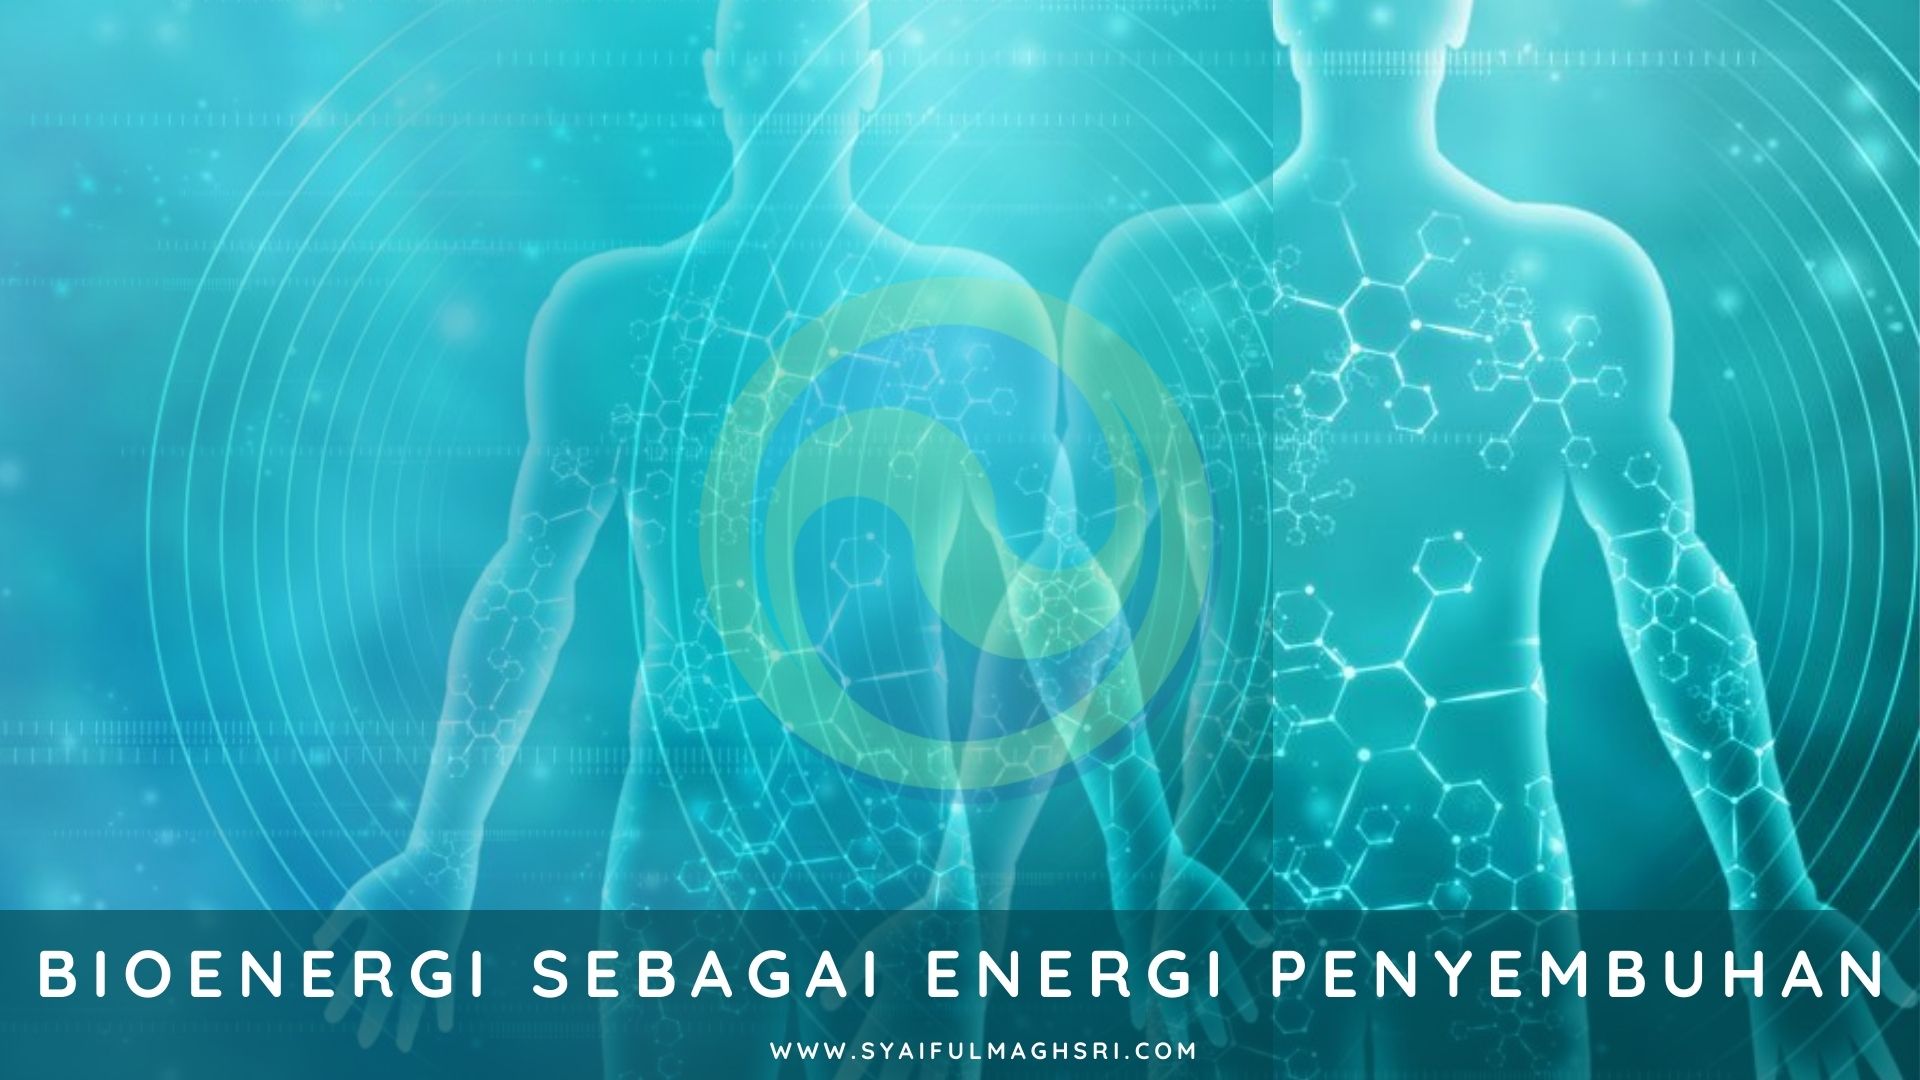 Bioenergi Sebagai Energi Penyembuhan - Syaiful Maghsri.com